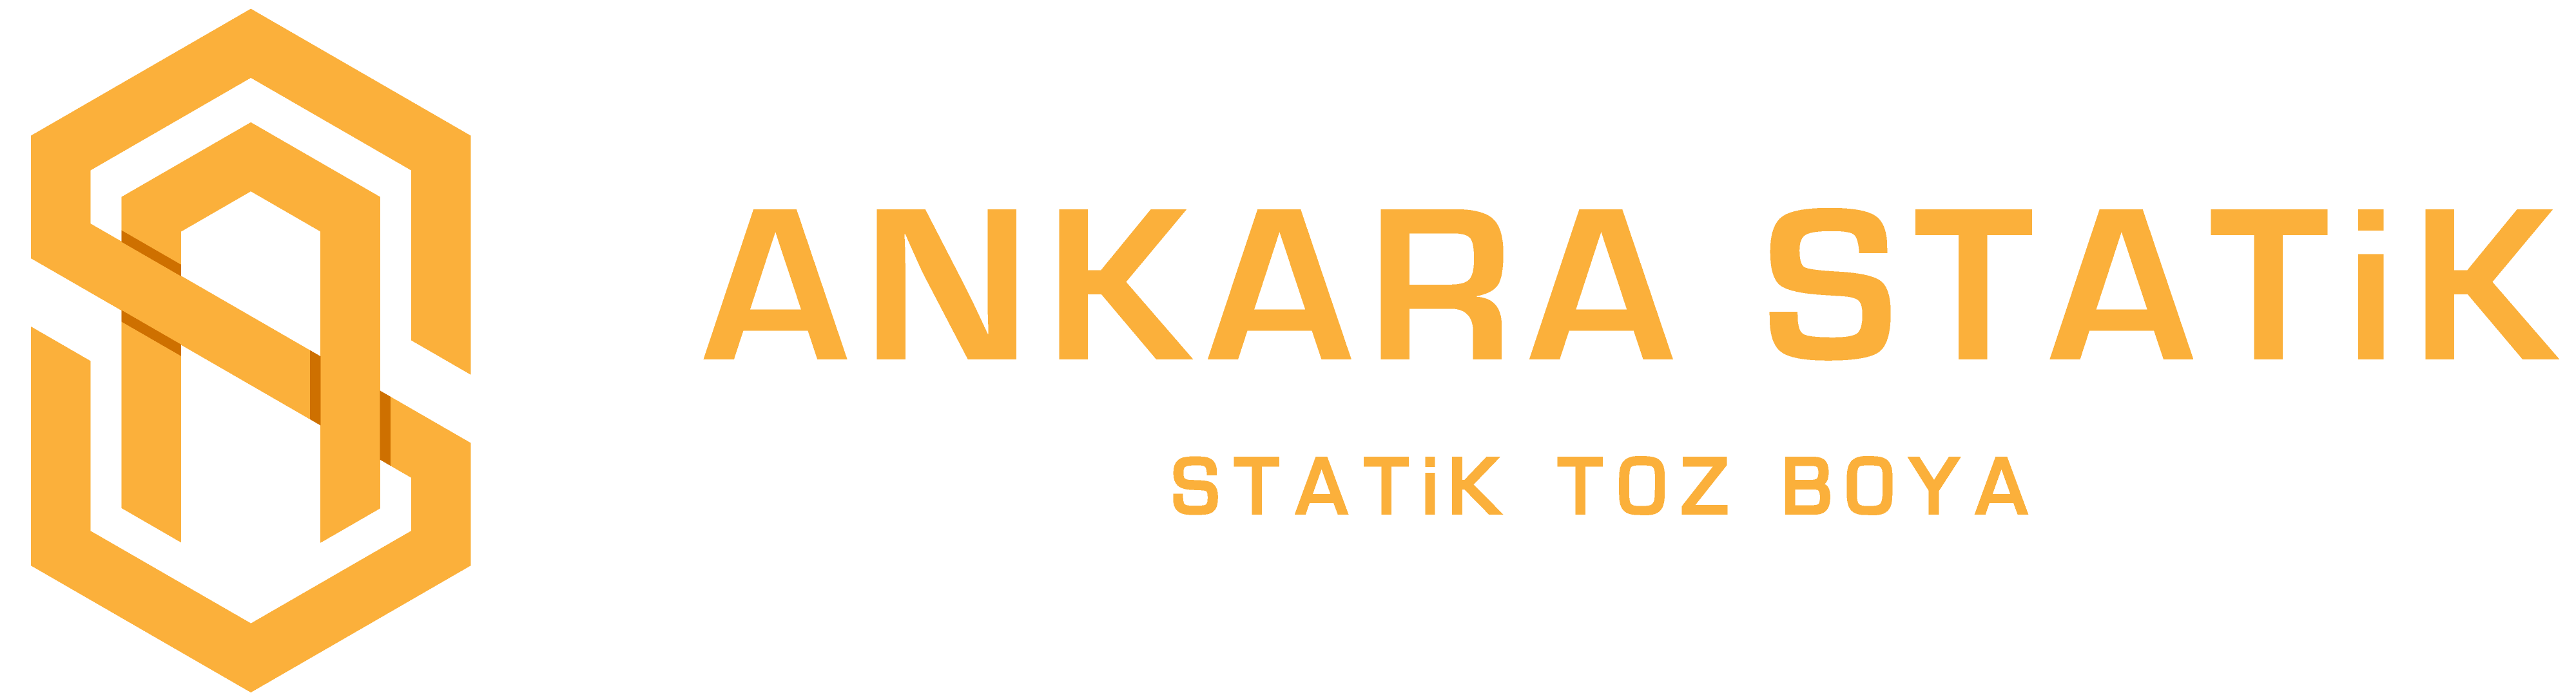 Ankara Statik